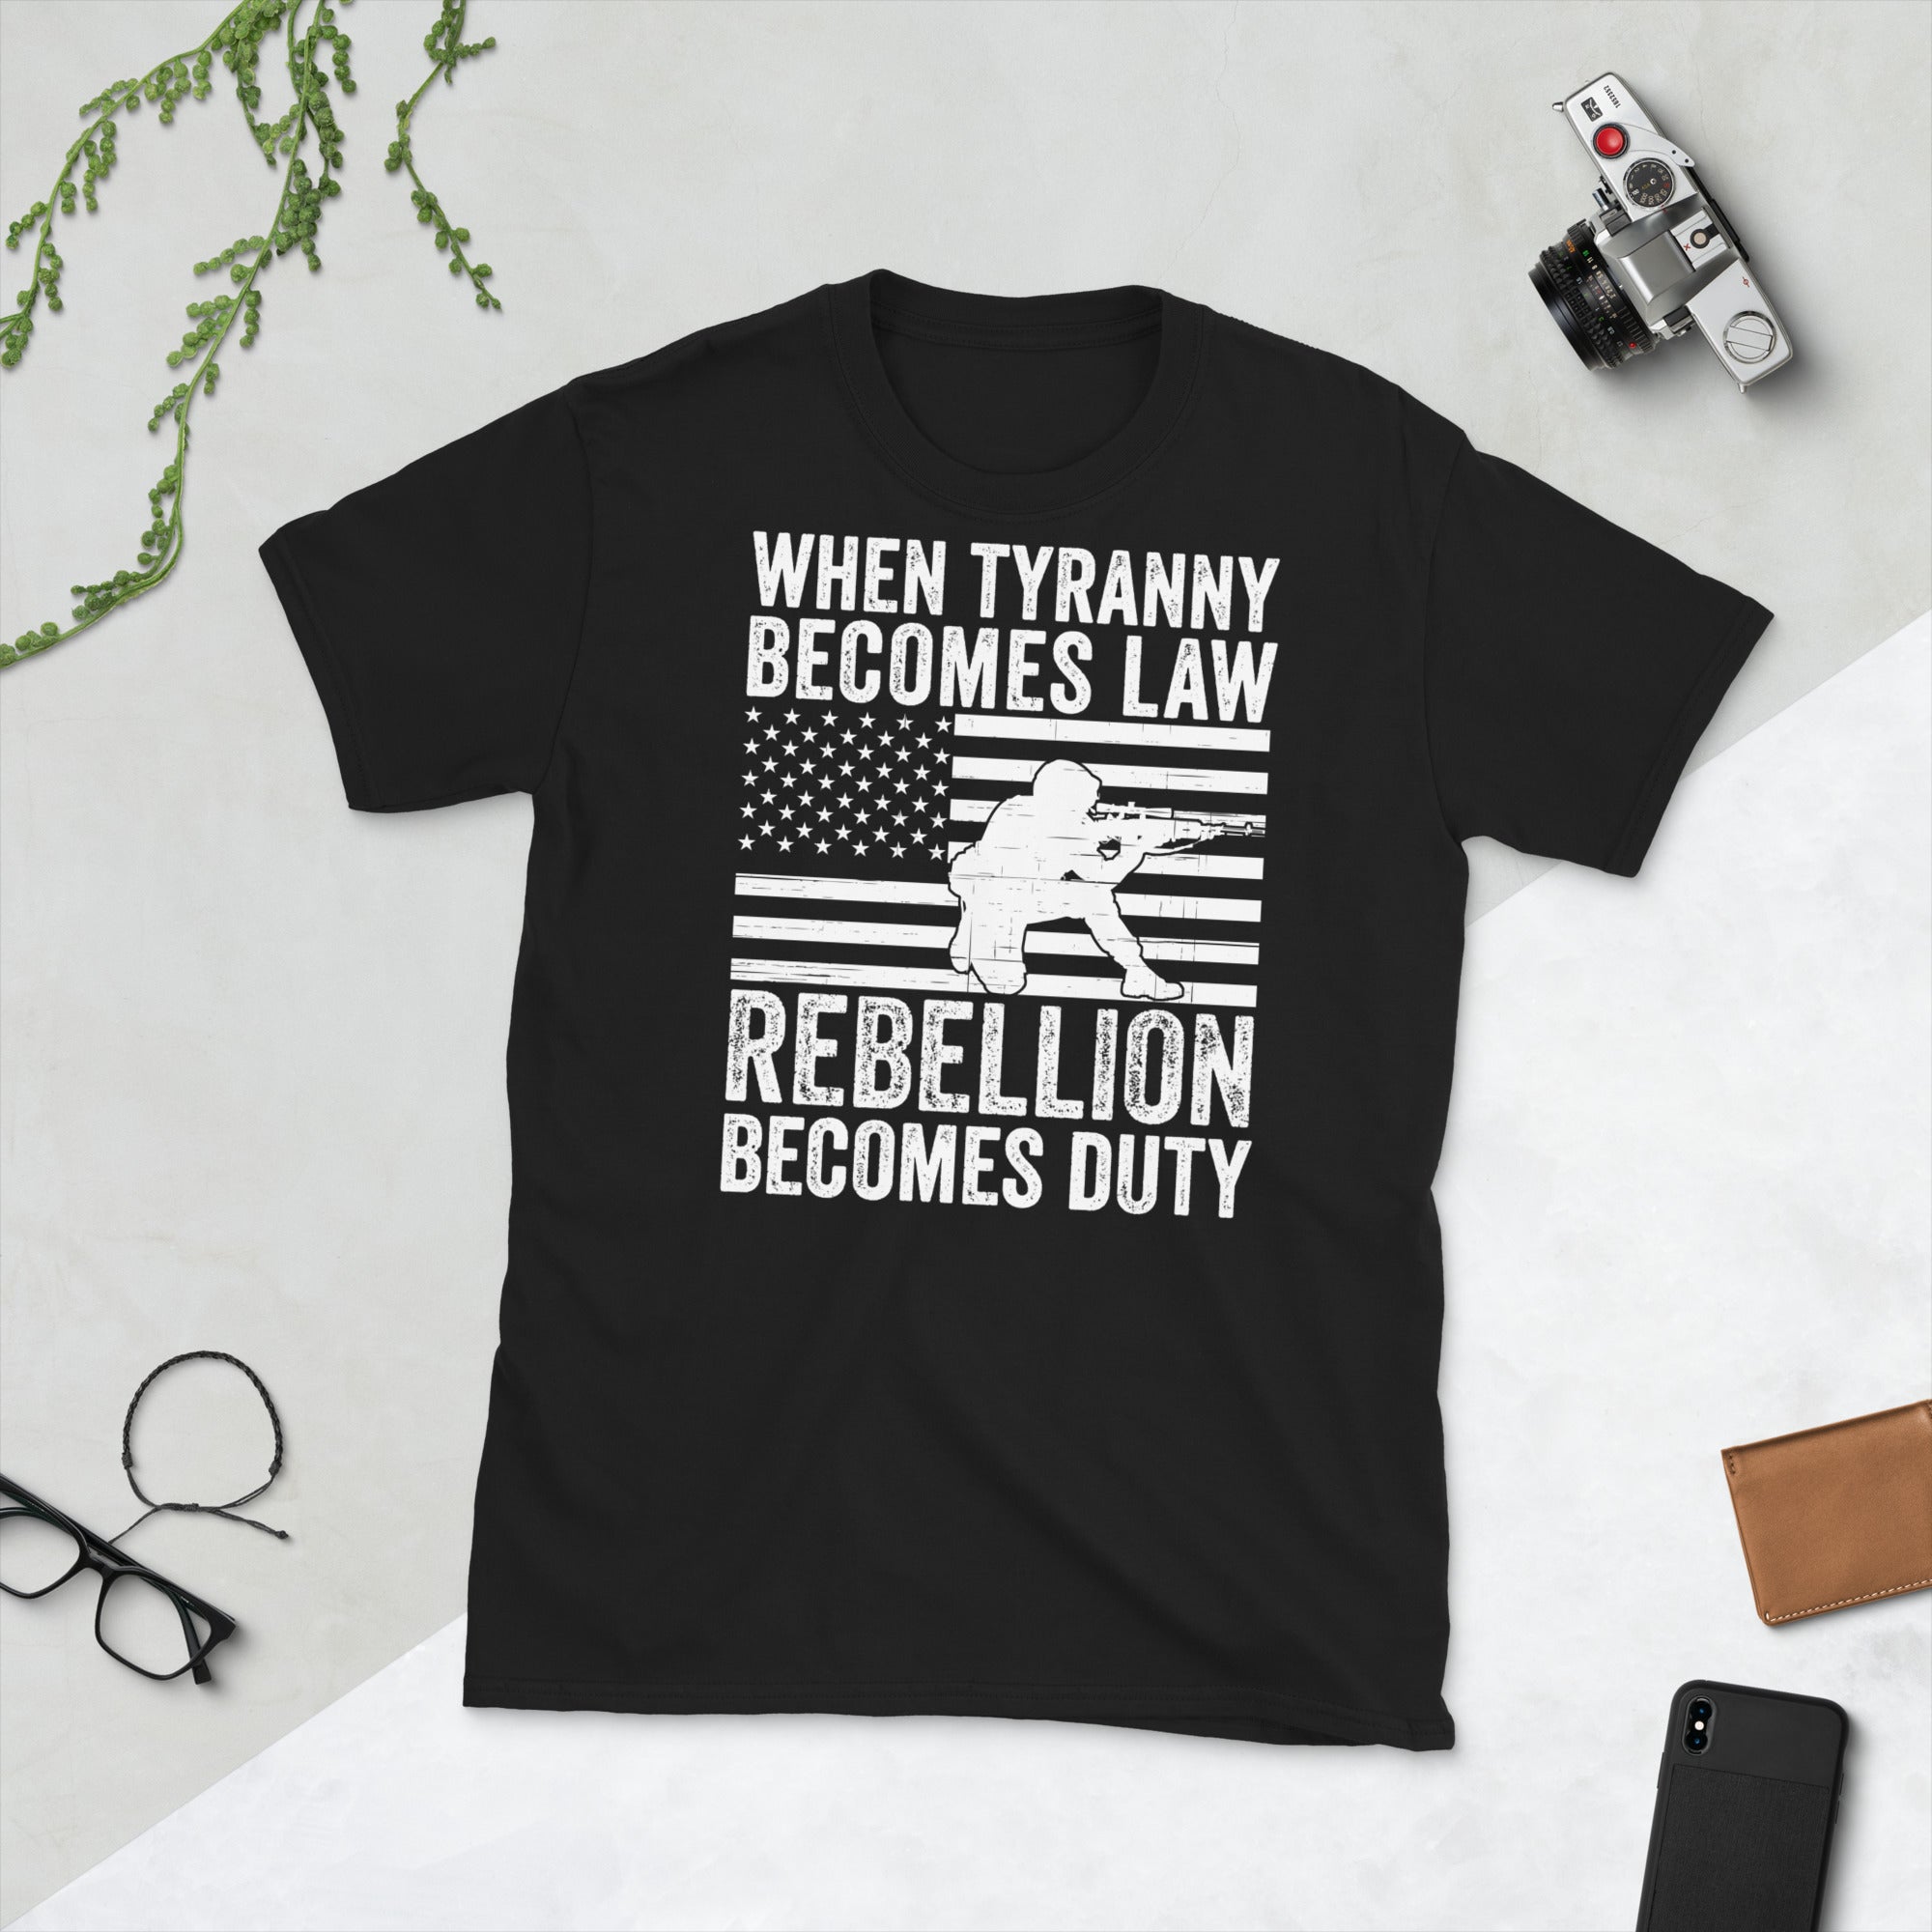 Camisa de tiranía, camisa de rebelión, cuando la tiranía se convierte en ley, la rebelión se convierte en deber, camisa de 1776, camisa de Thomas Jefferson, camisas políticas